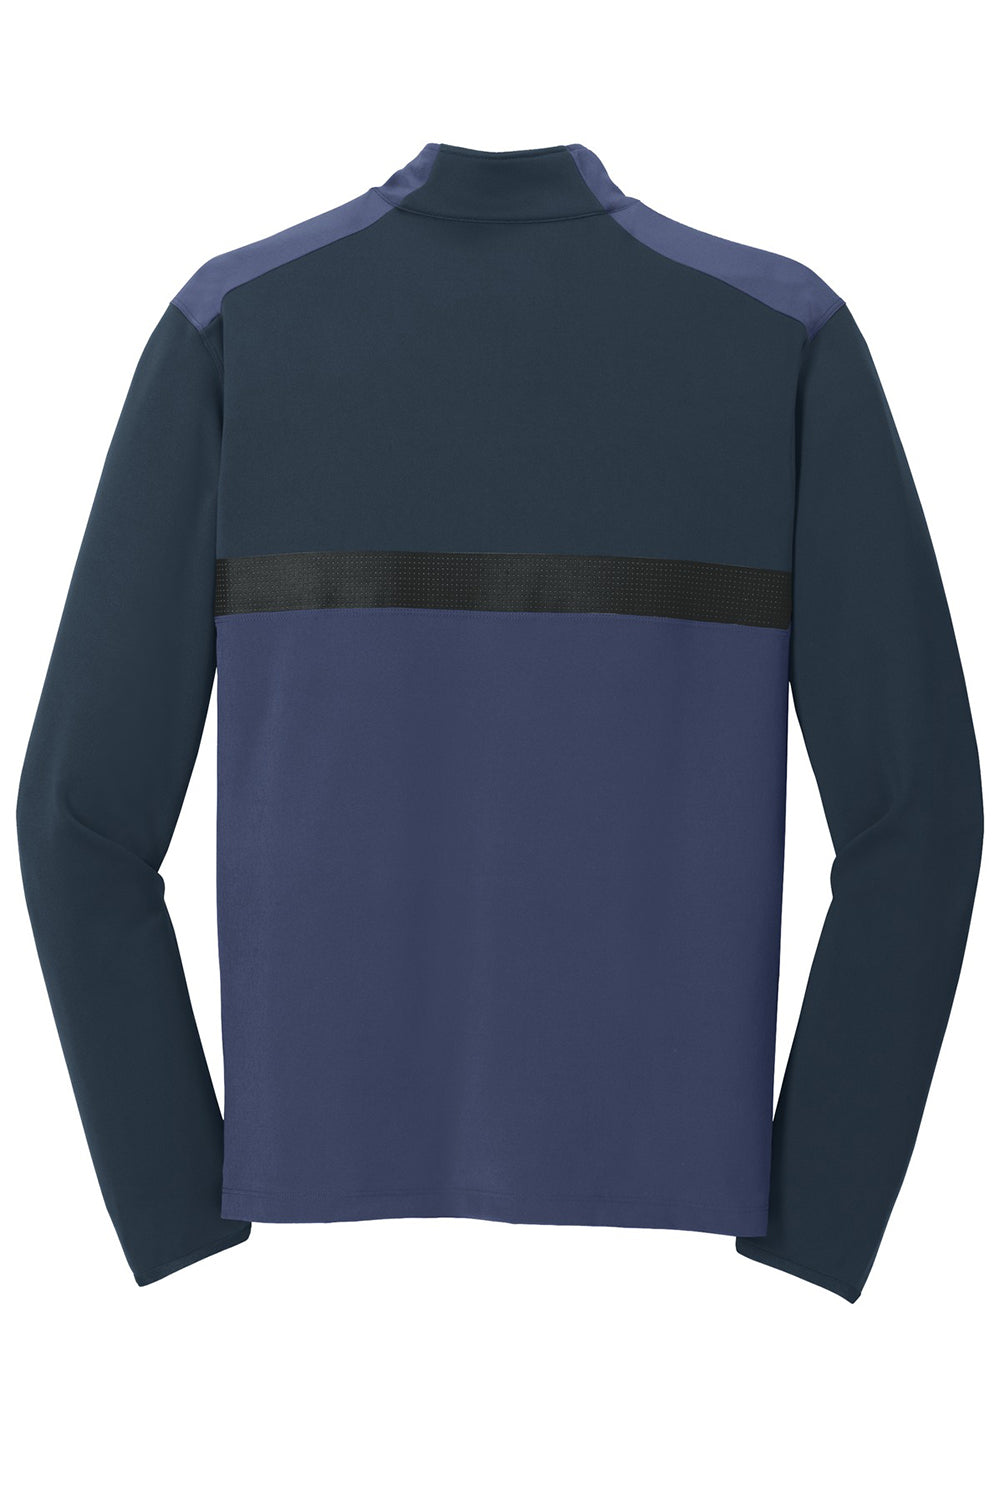 Nike 746102 Mens Dri-Fit Moisture Wicking 1/4 Zip Sweatshirt Midnight Navy Blue/Obsidian Blue Flat Back